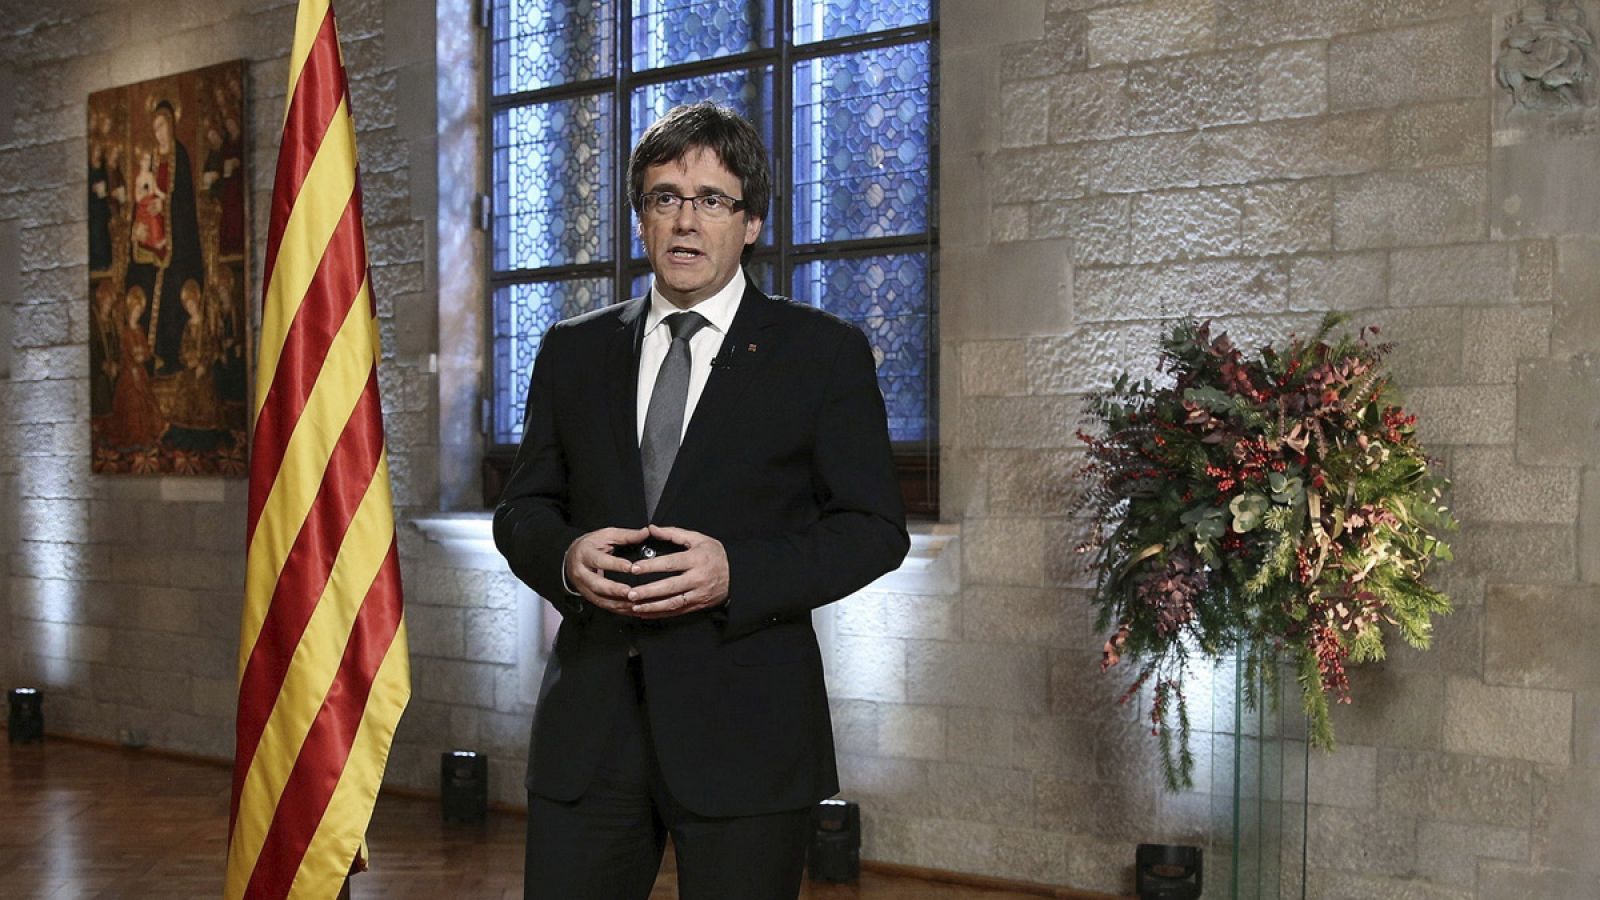 Fotografía facilitada por la Generalitat de Cataluña de su presidente, Carles Puigdemont, durante el mensaje institucional a los ciudadanos con motivo del Fin de Año